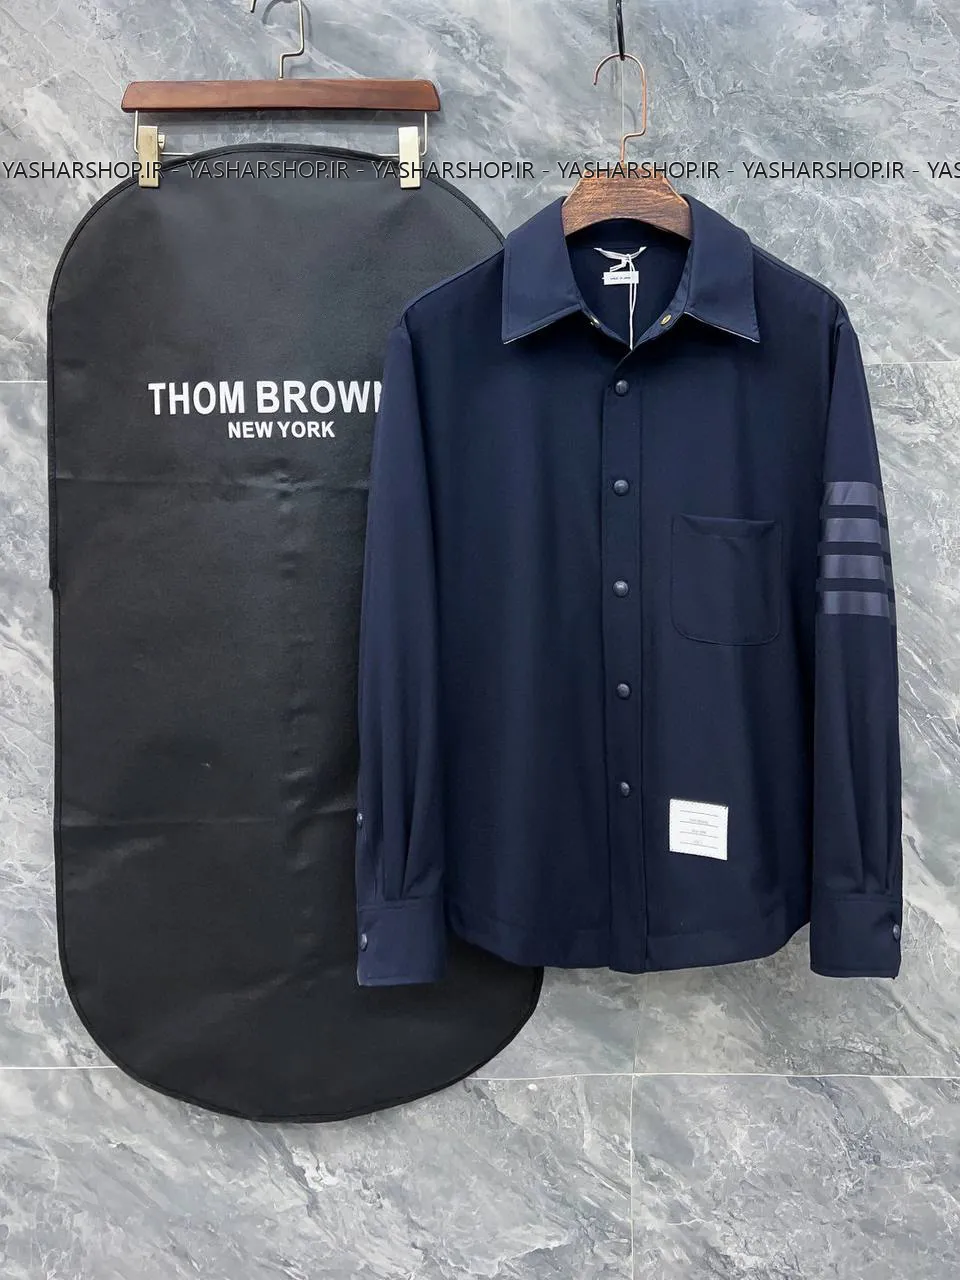 کت پیراهن تام براون THOM BROWNE کد 20142